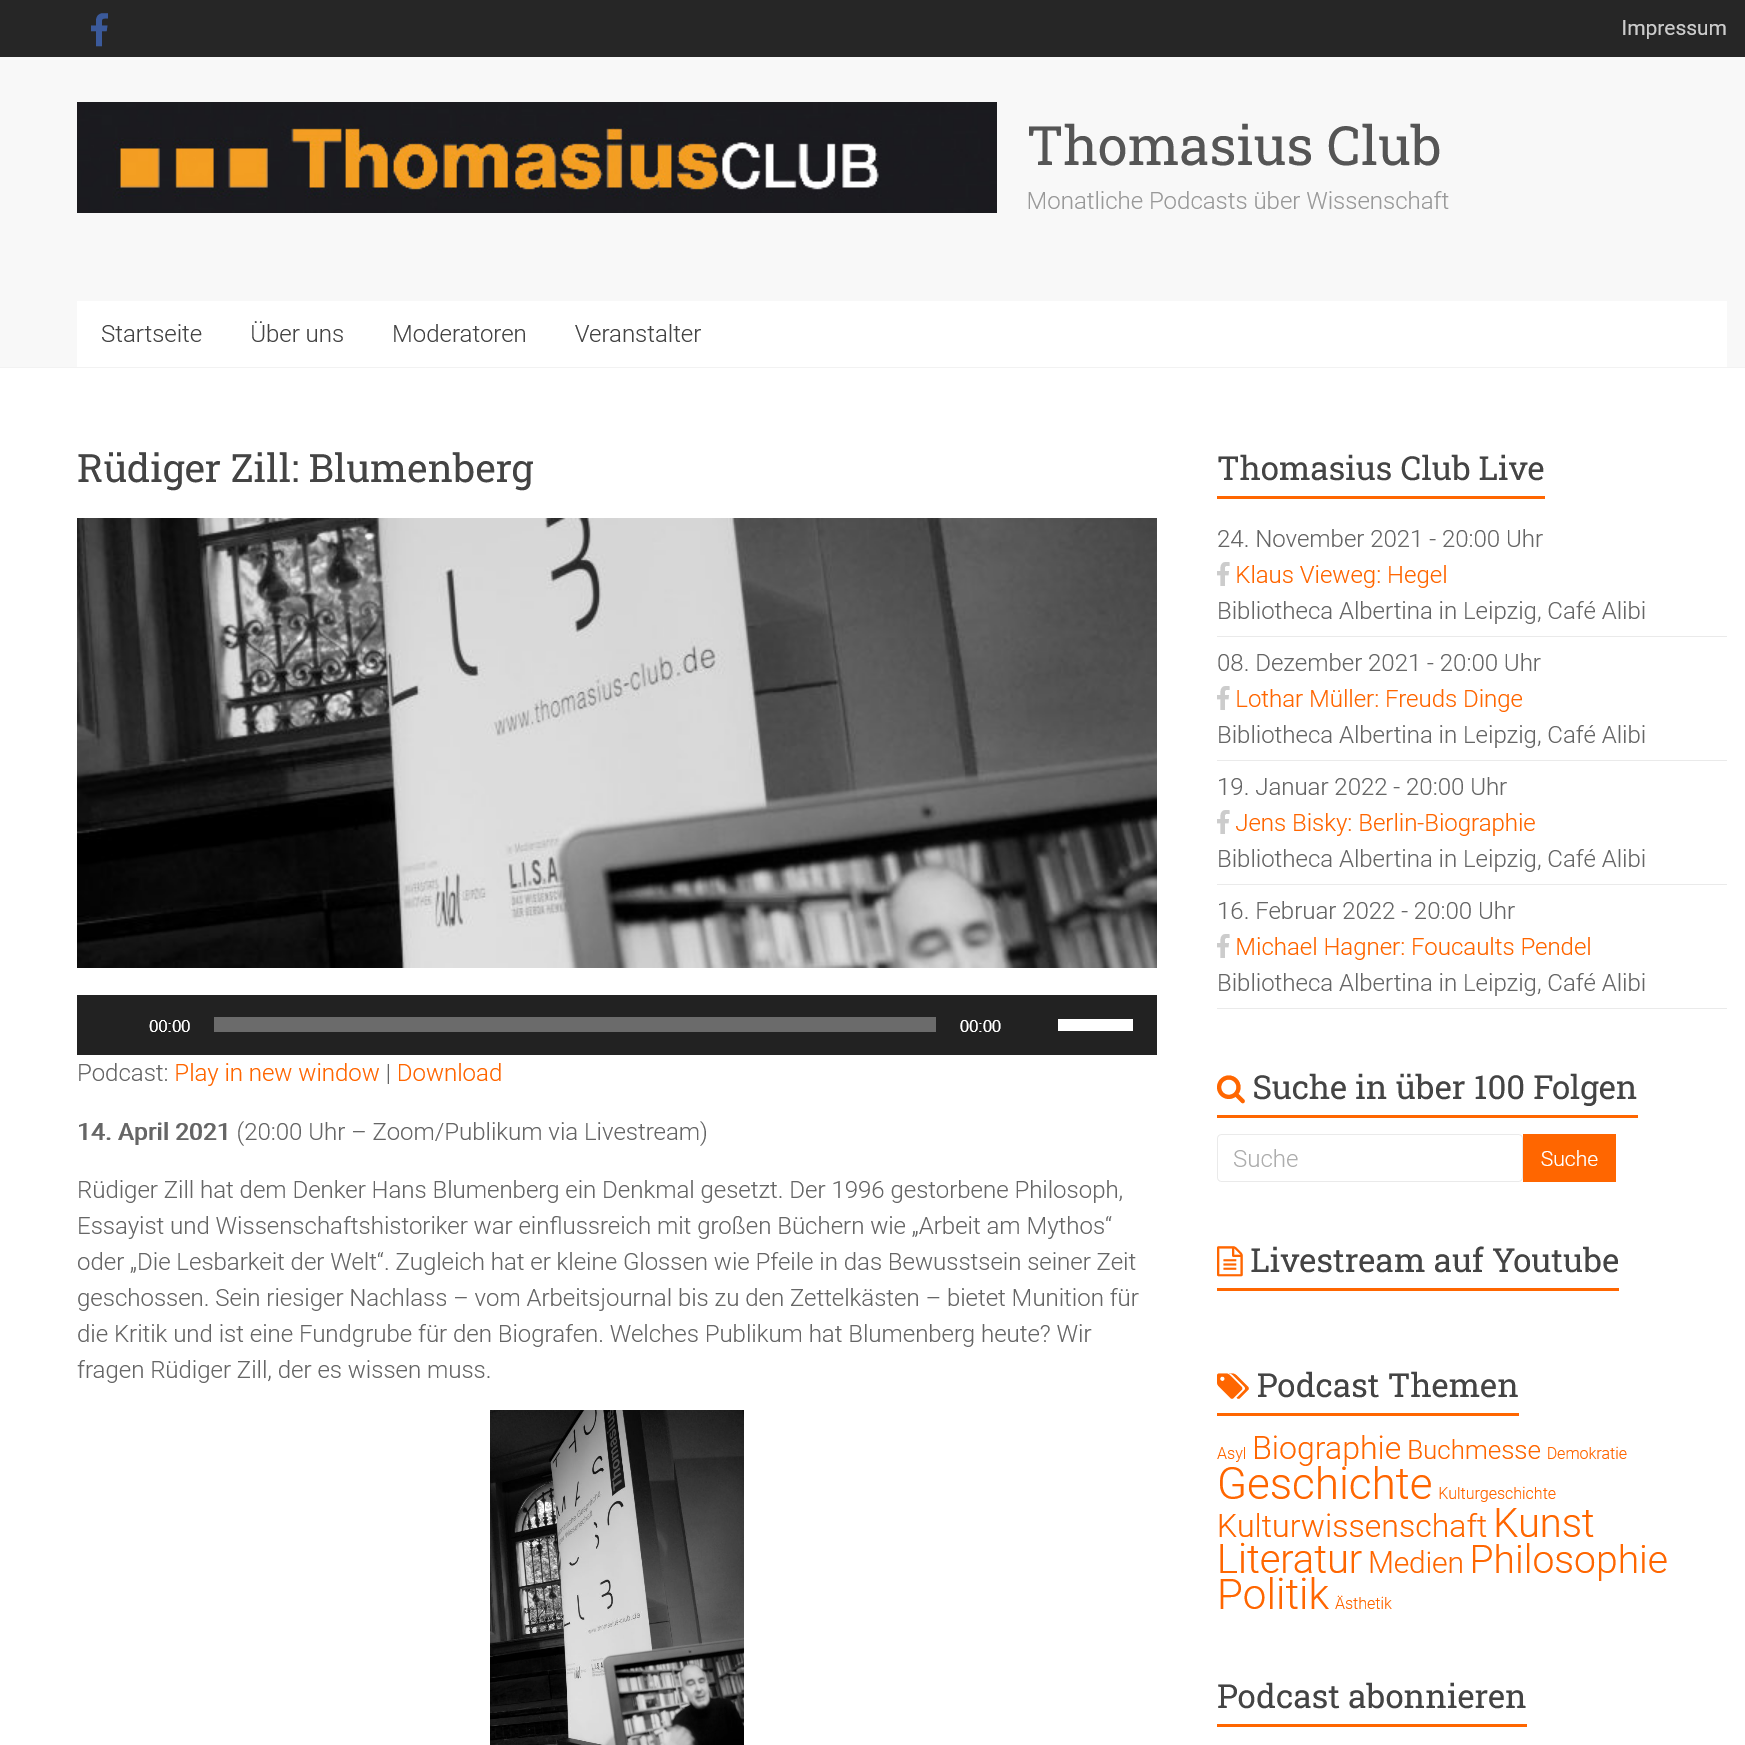 Thomasius Club